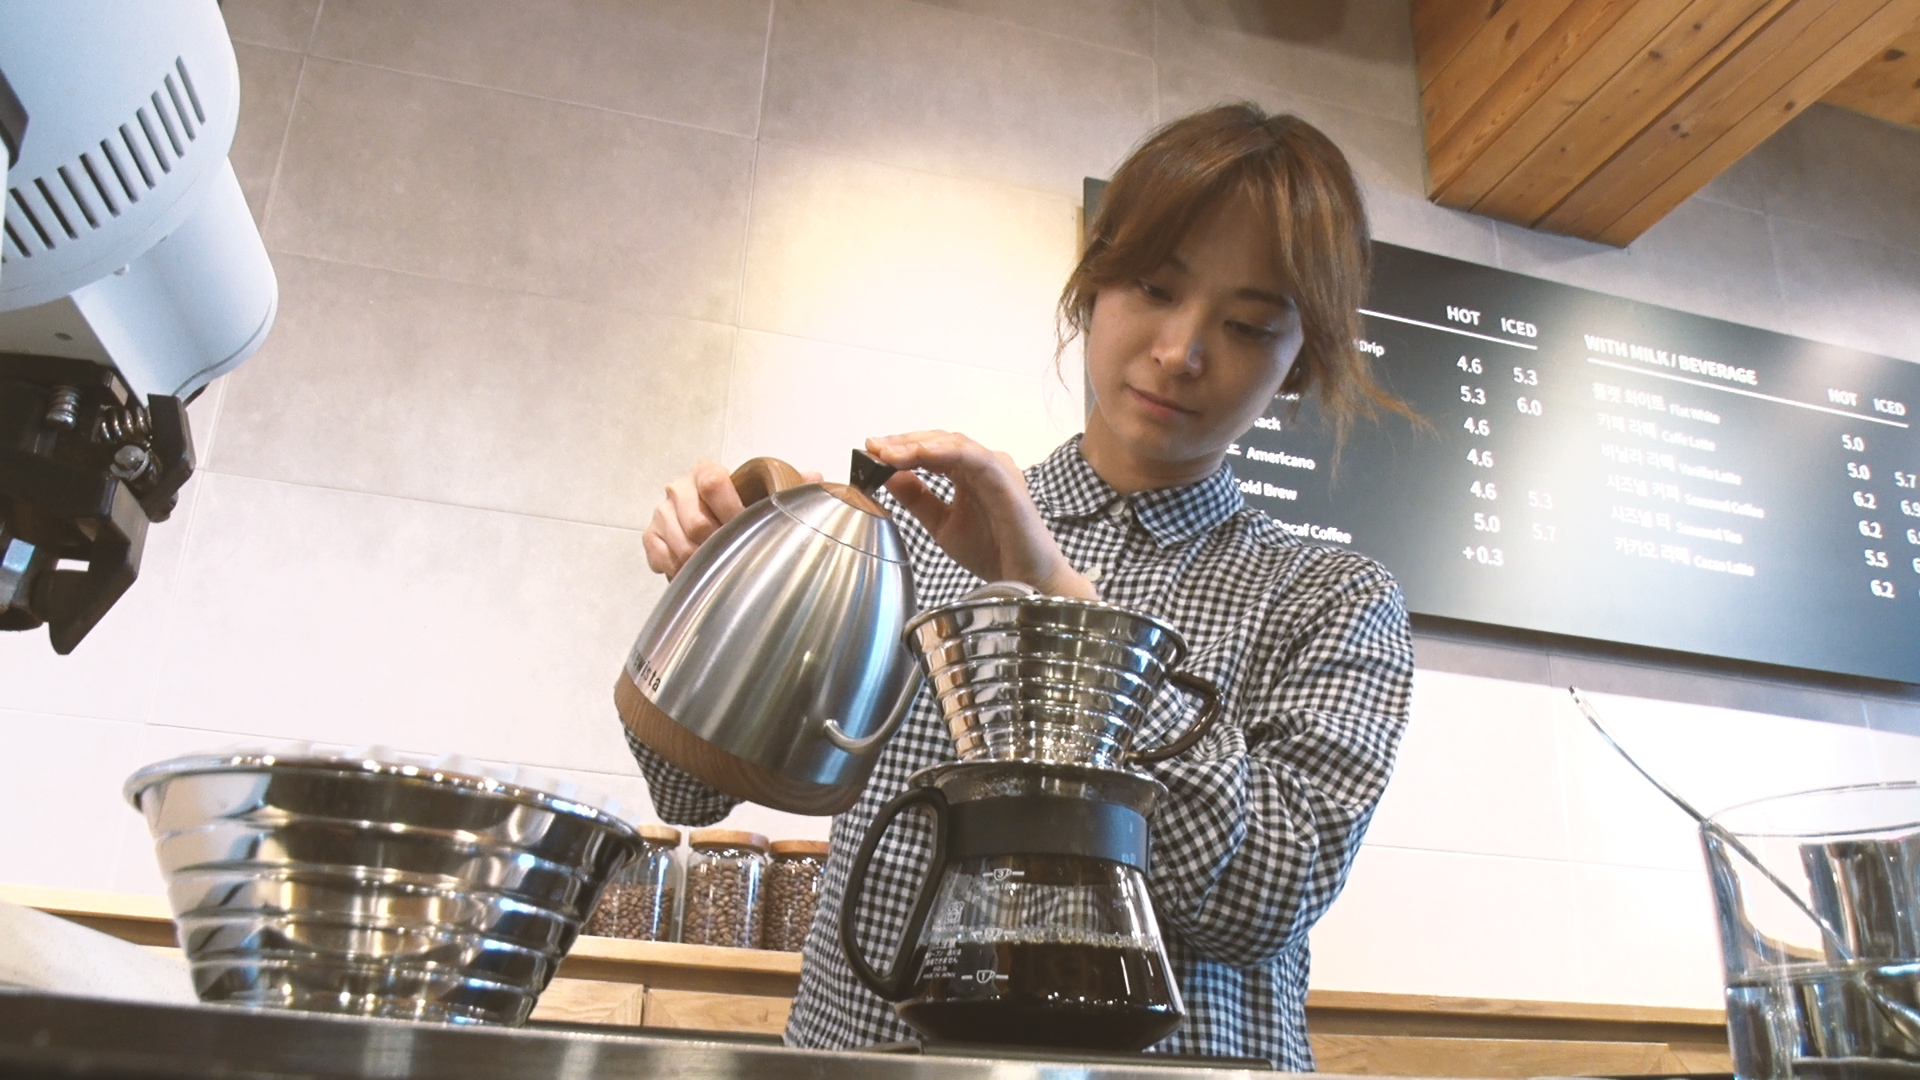 2019년 월드바리스타챔피언십에서 우승한 전주연(32)씨가 이사로 재직중인 부산 금정구 모모스커피점에서 커피를 내리고 있는 모습